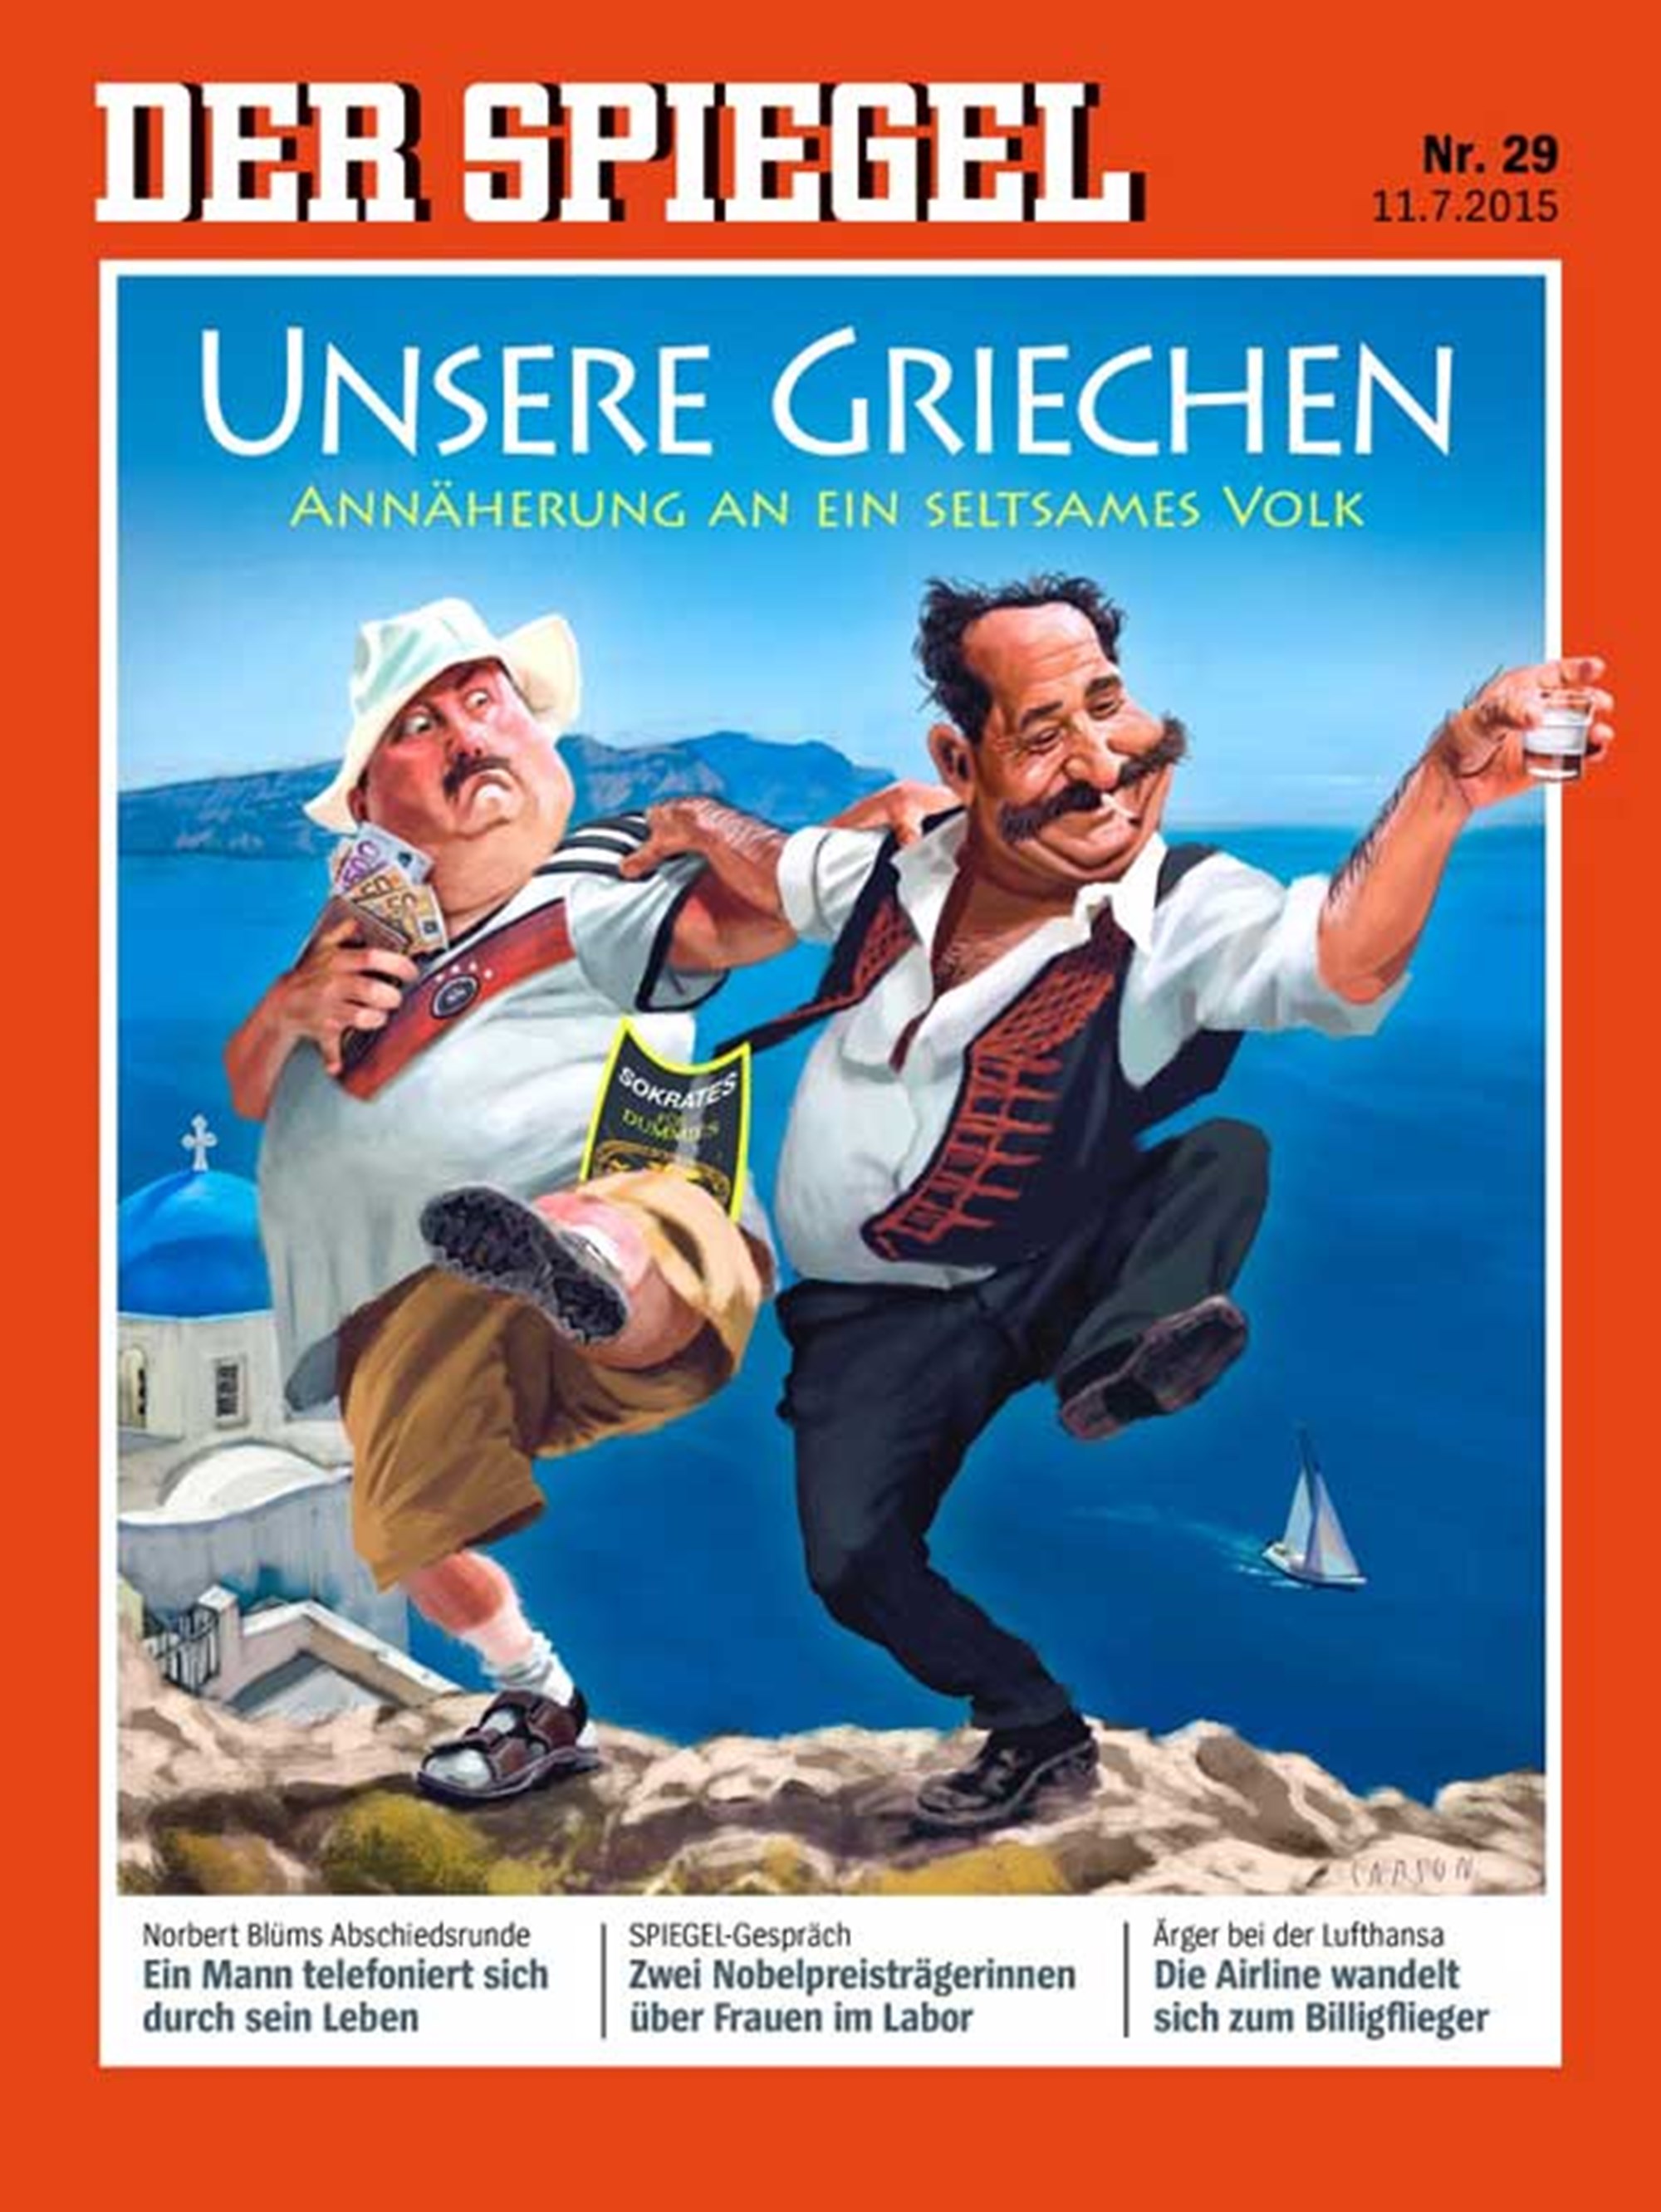 Spiel mit Peinlichkeiten: Kritik am "Spiegel"-Cover - Spiegel